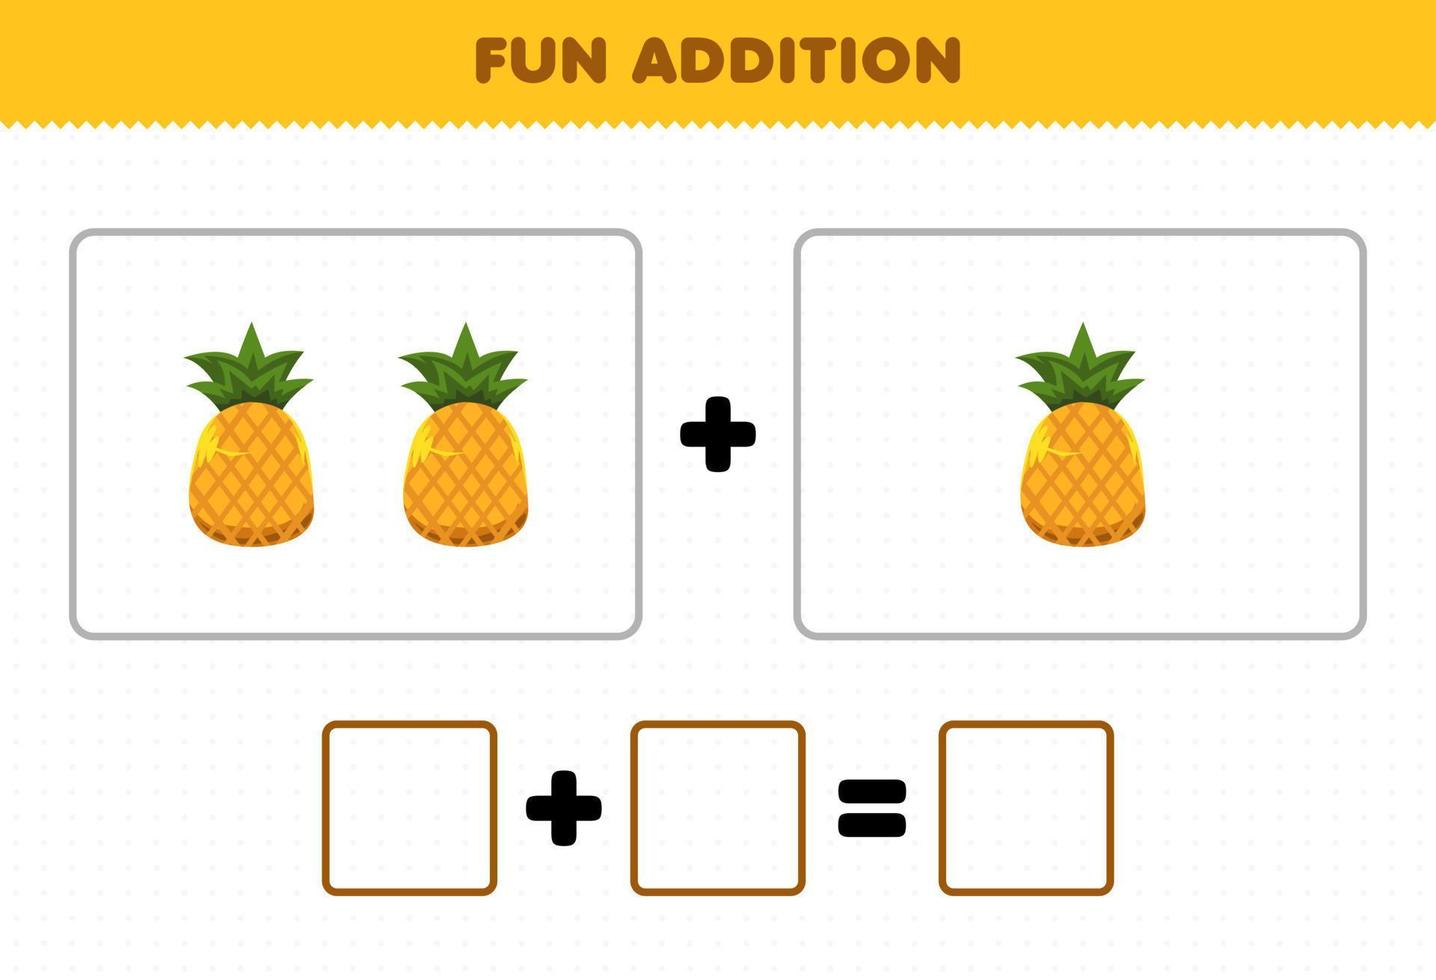 Bildungsspiel für Kinder Spaßzusatz durch Zählen des Arbeitsblatts für Cartoon-Frucht-Ananas-Bilder vektor